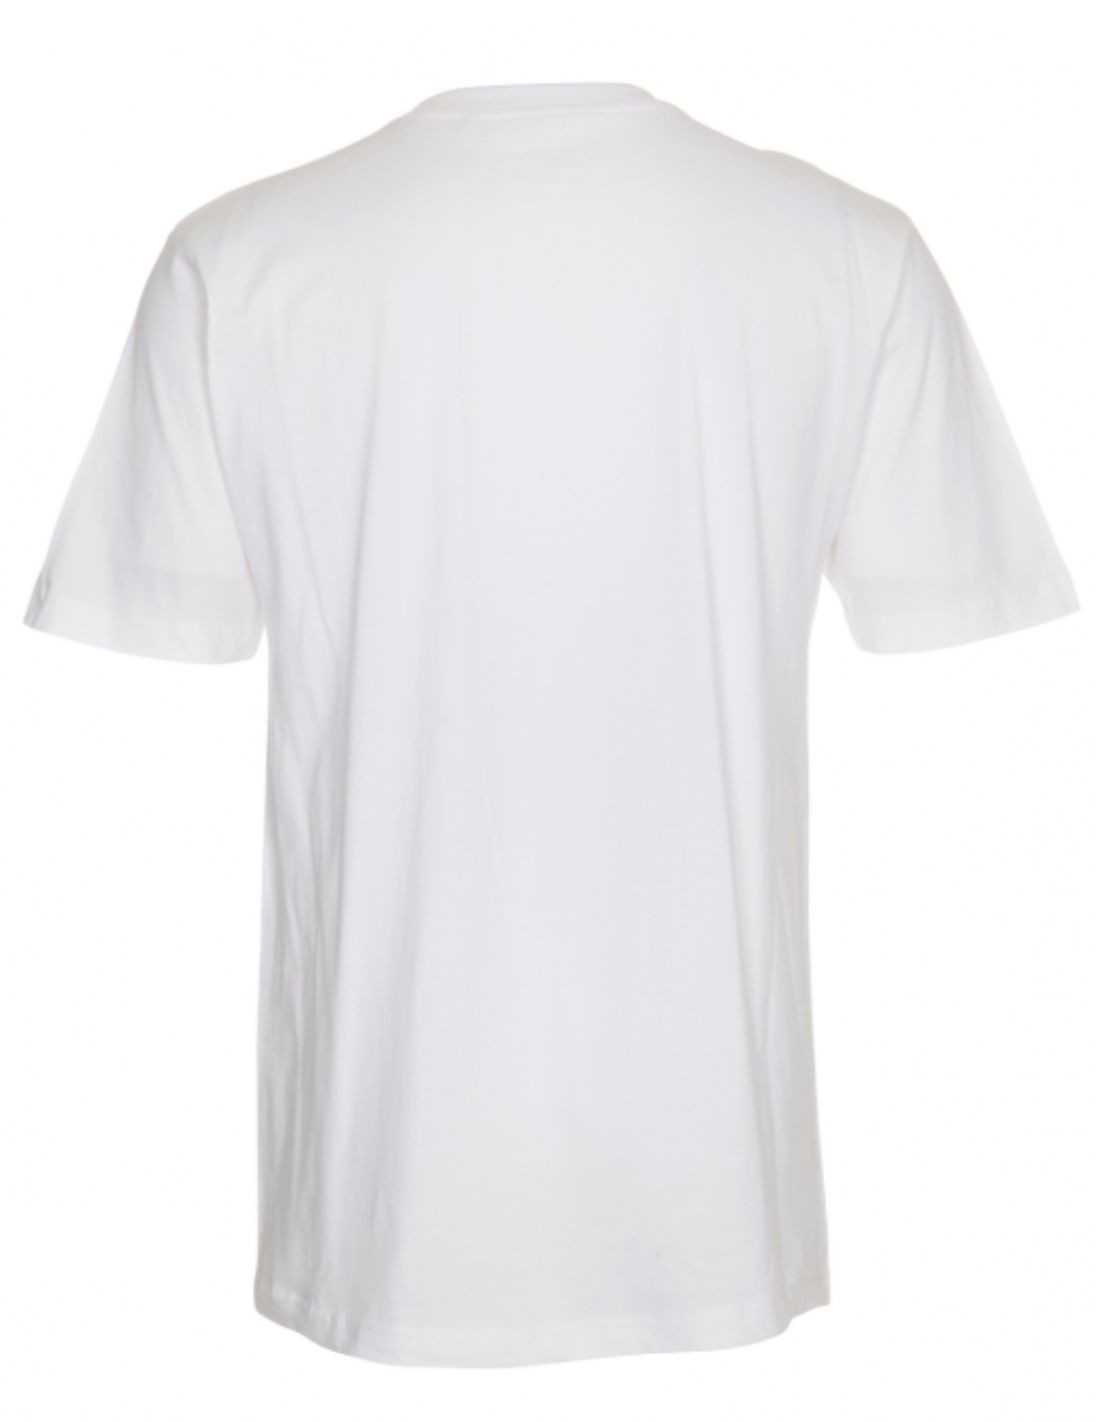 BSAT Stickman Logo T-Shirt White